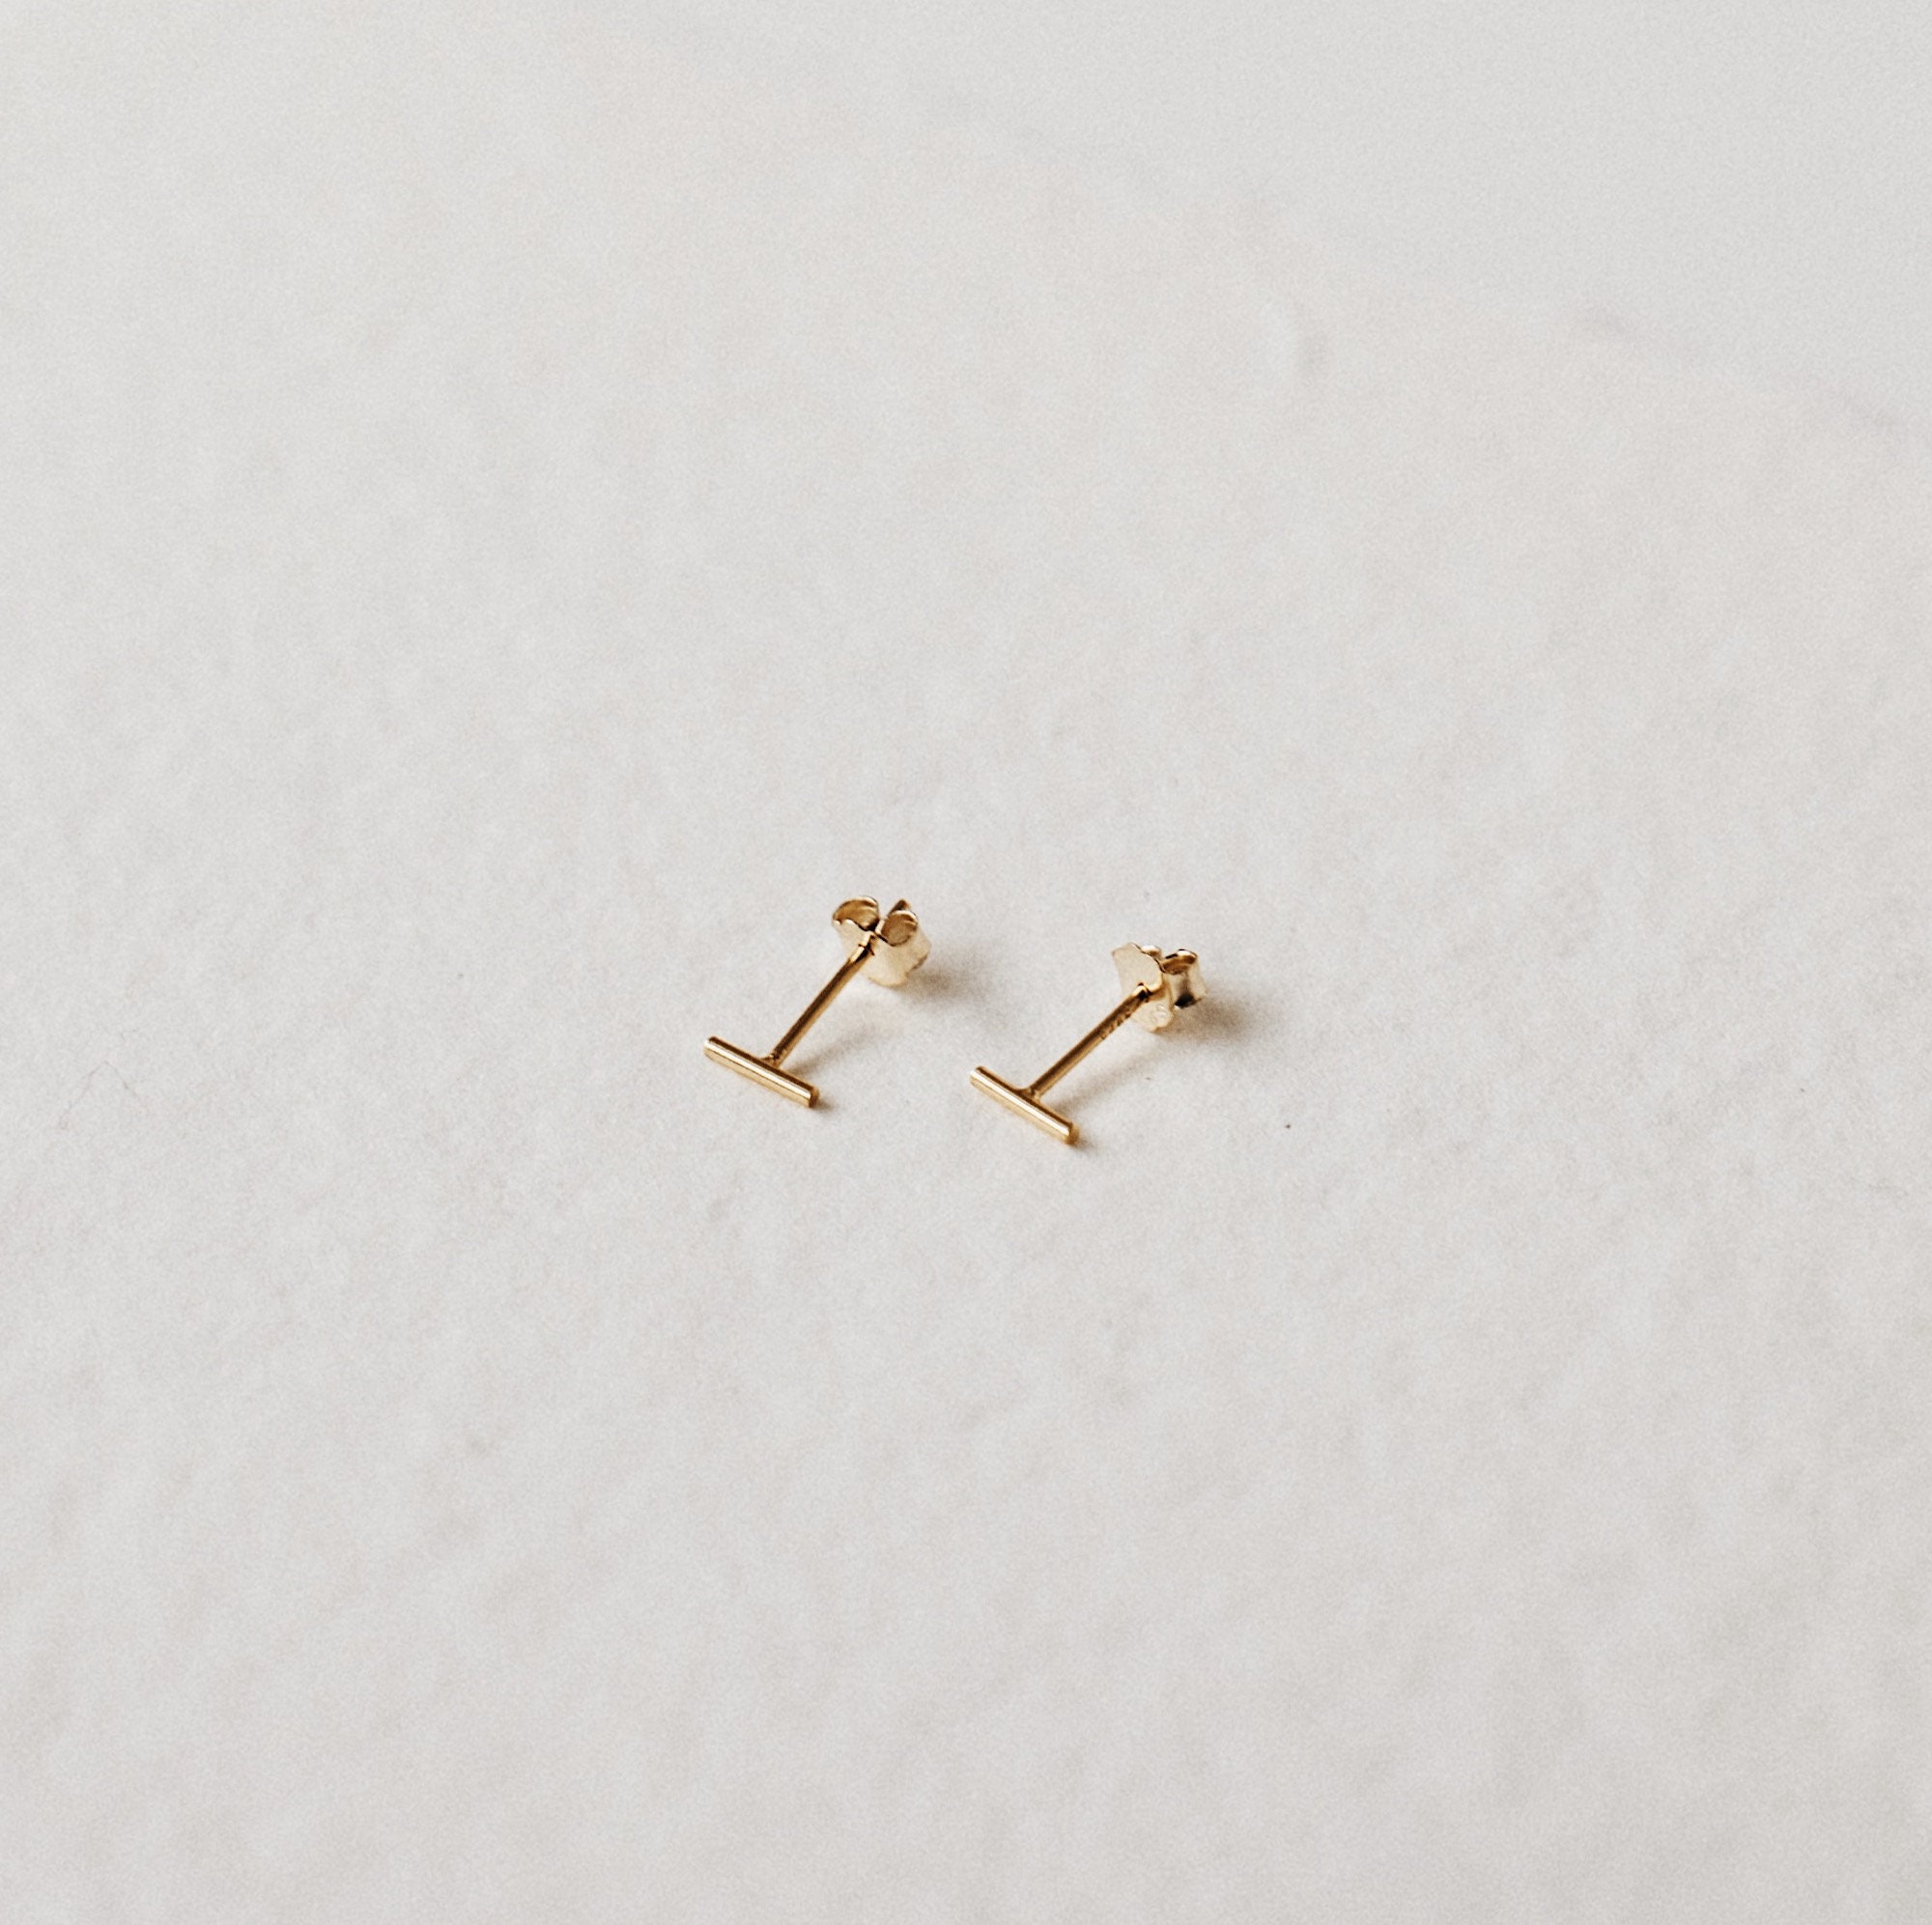 Minimal Line Earrings Small Minimalist Stud Earrings | Etsy